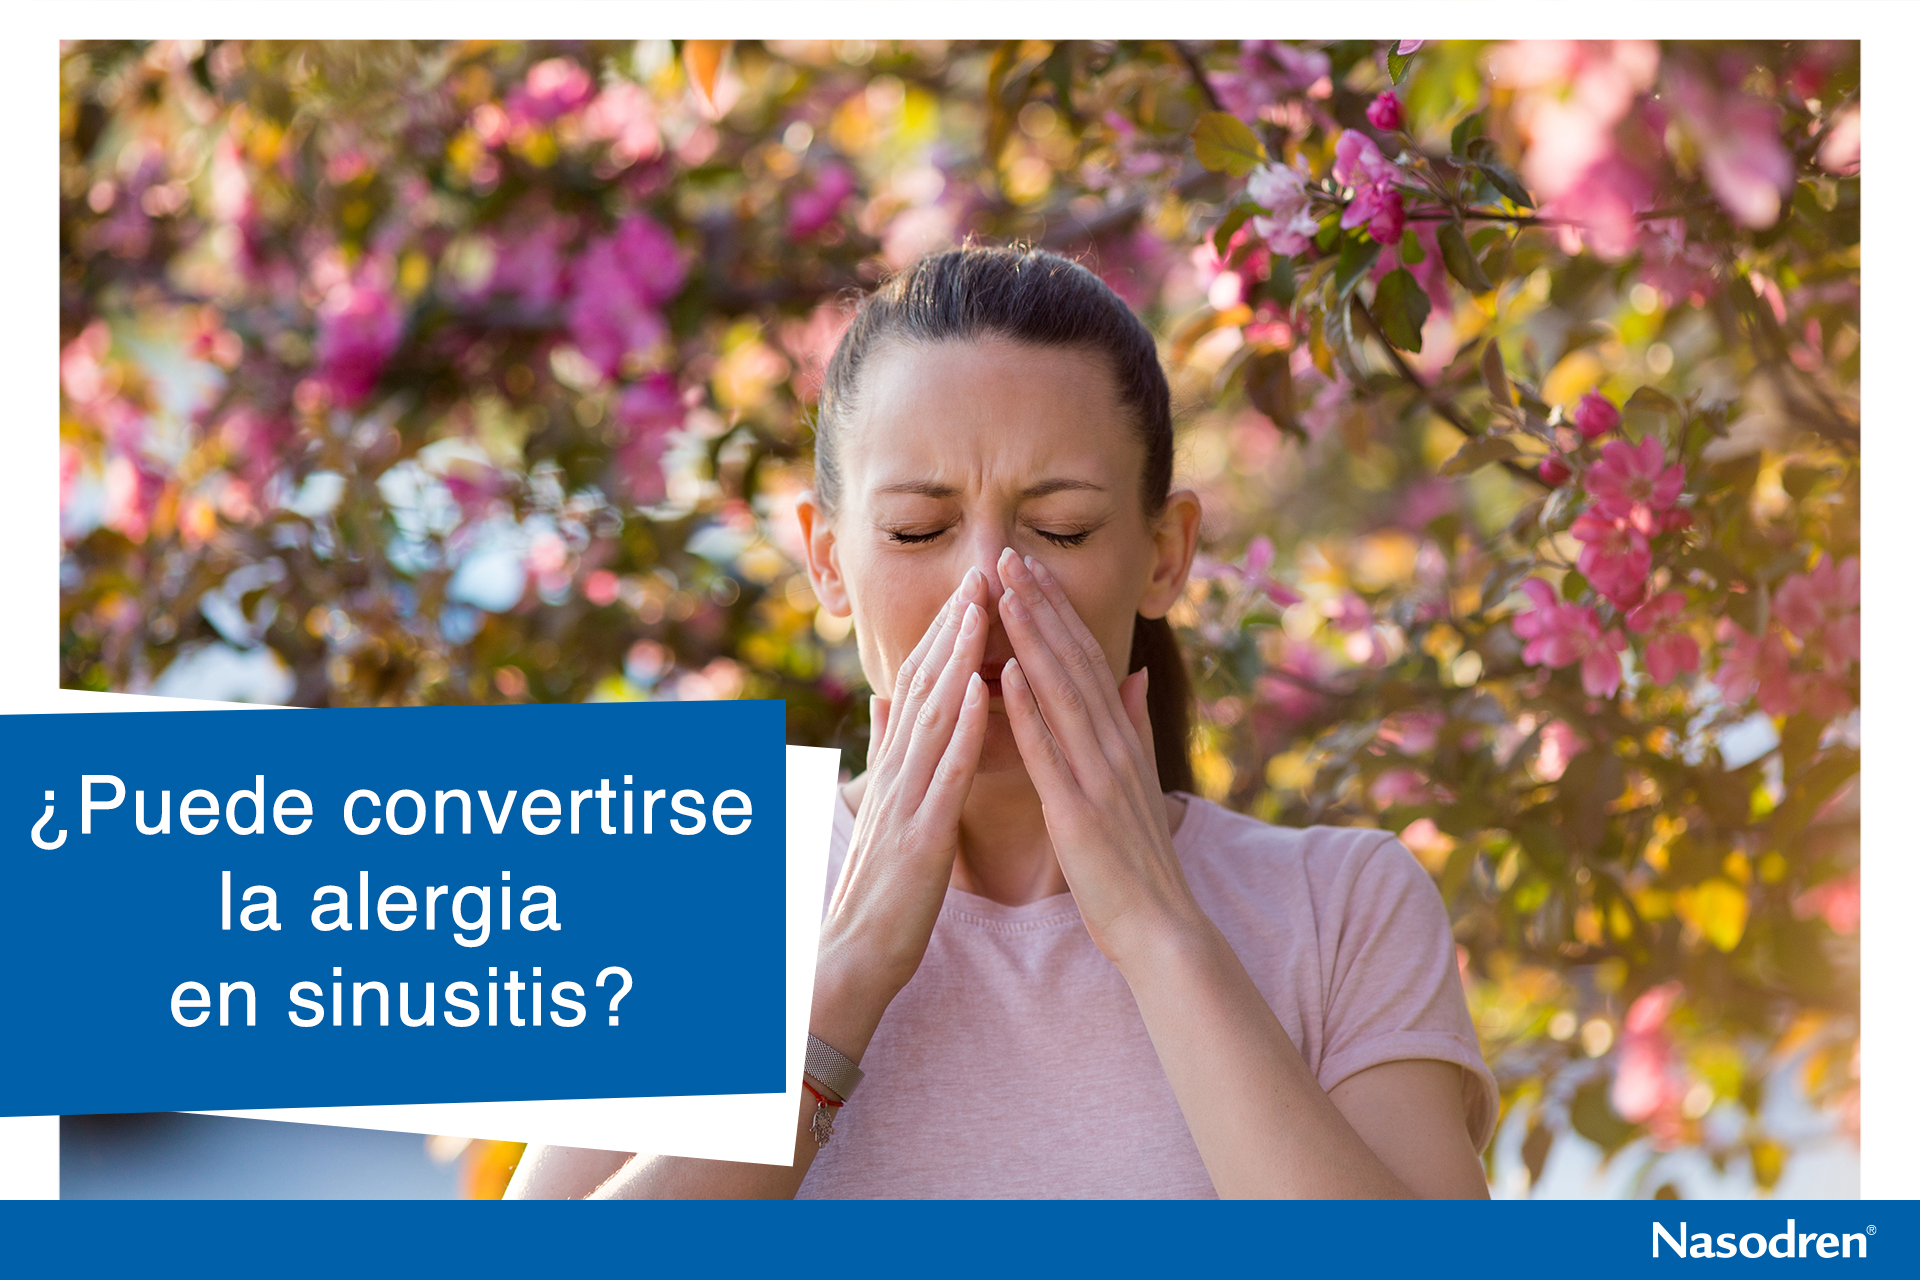 ¿Puede convertirse la alergia en sinusitis?